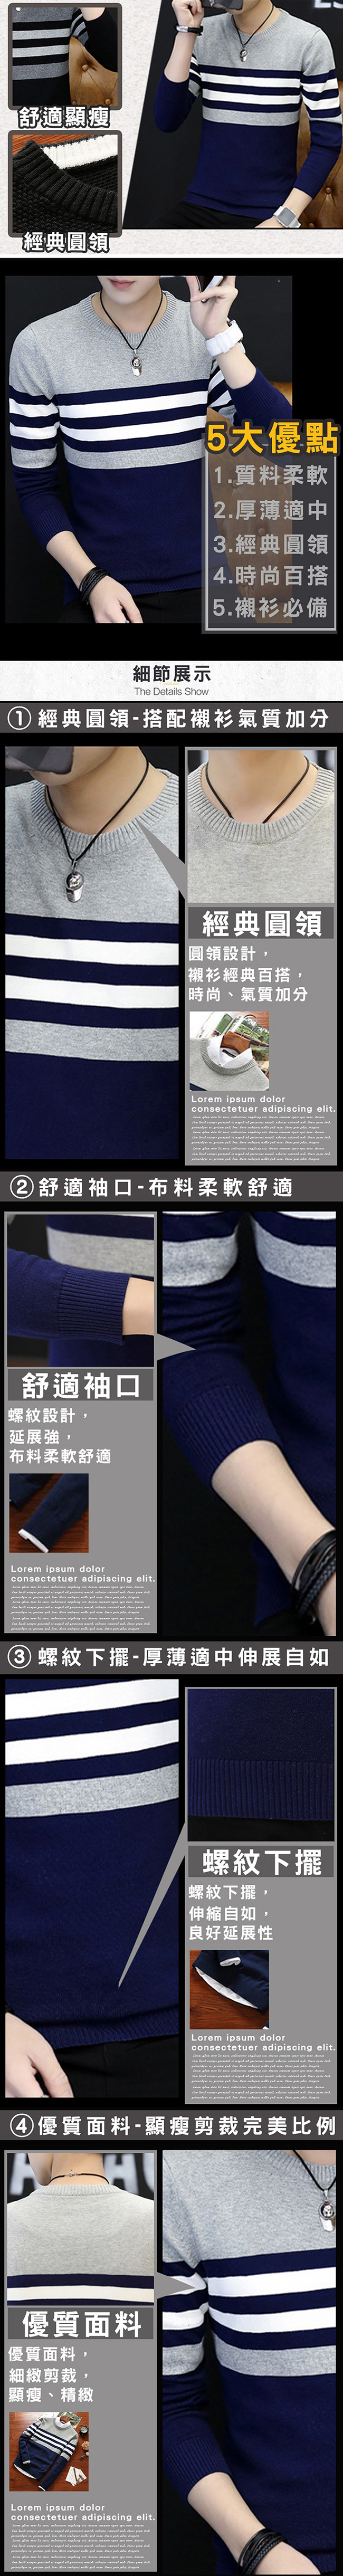 NEW FORCE 日系條紋拼接修身型男針織毛衣-深藍